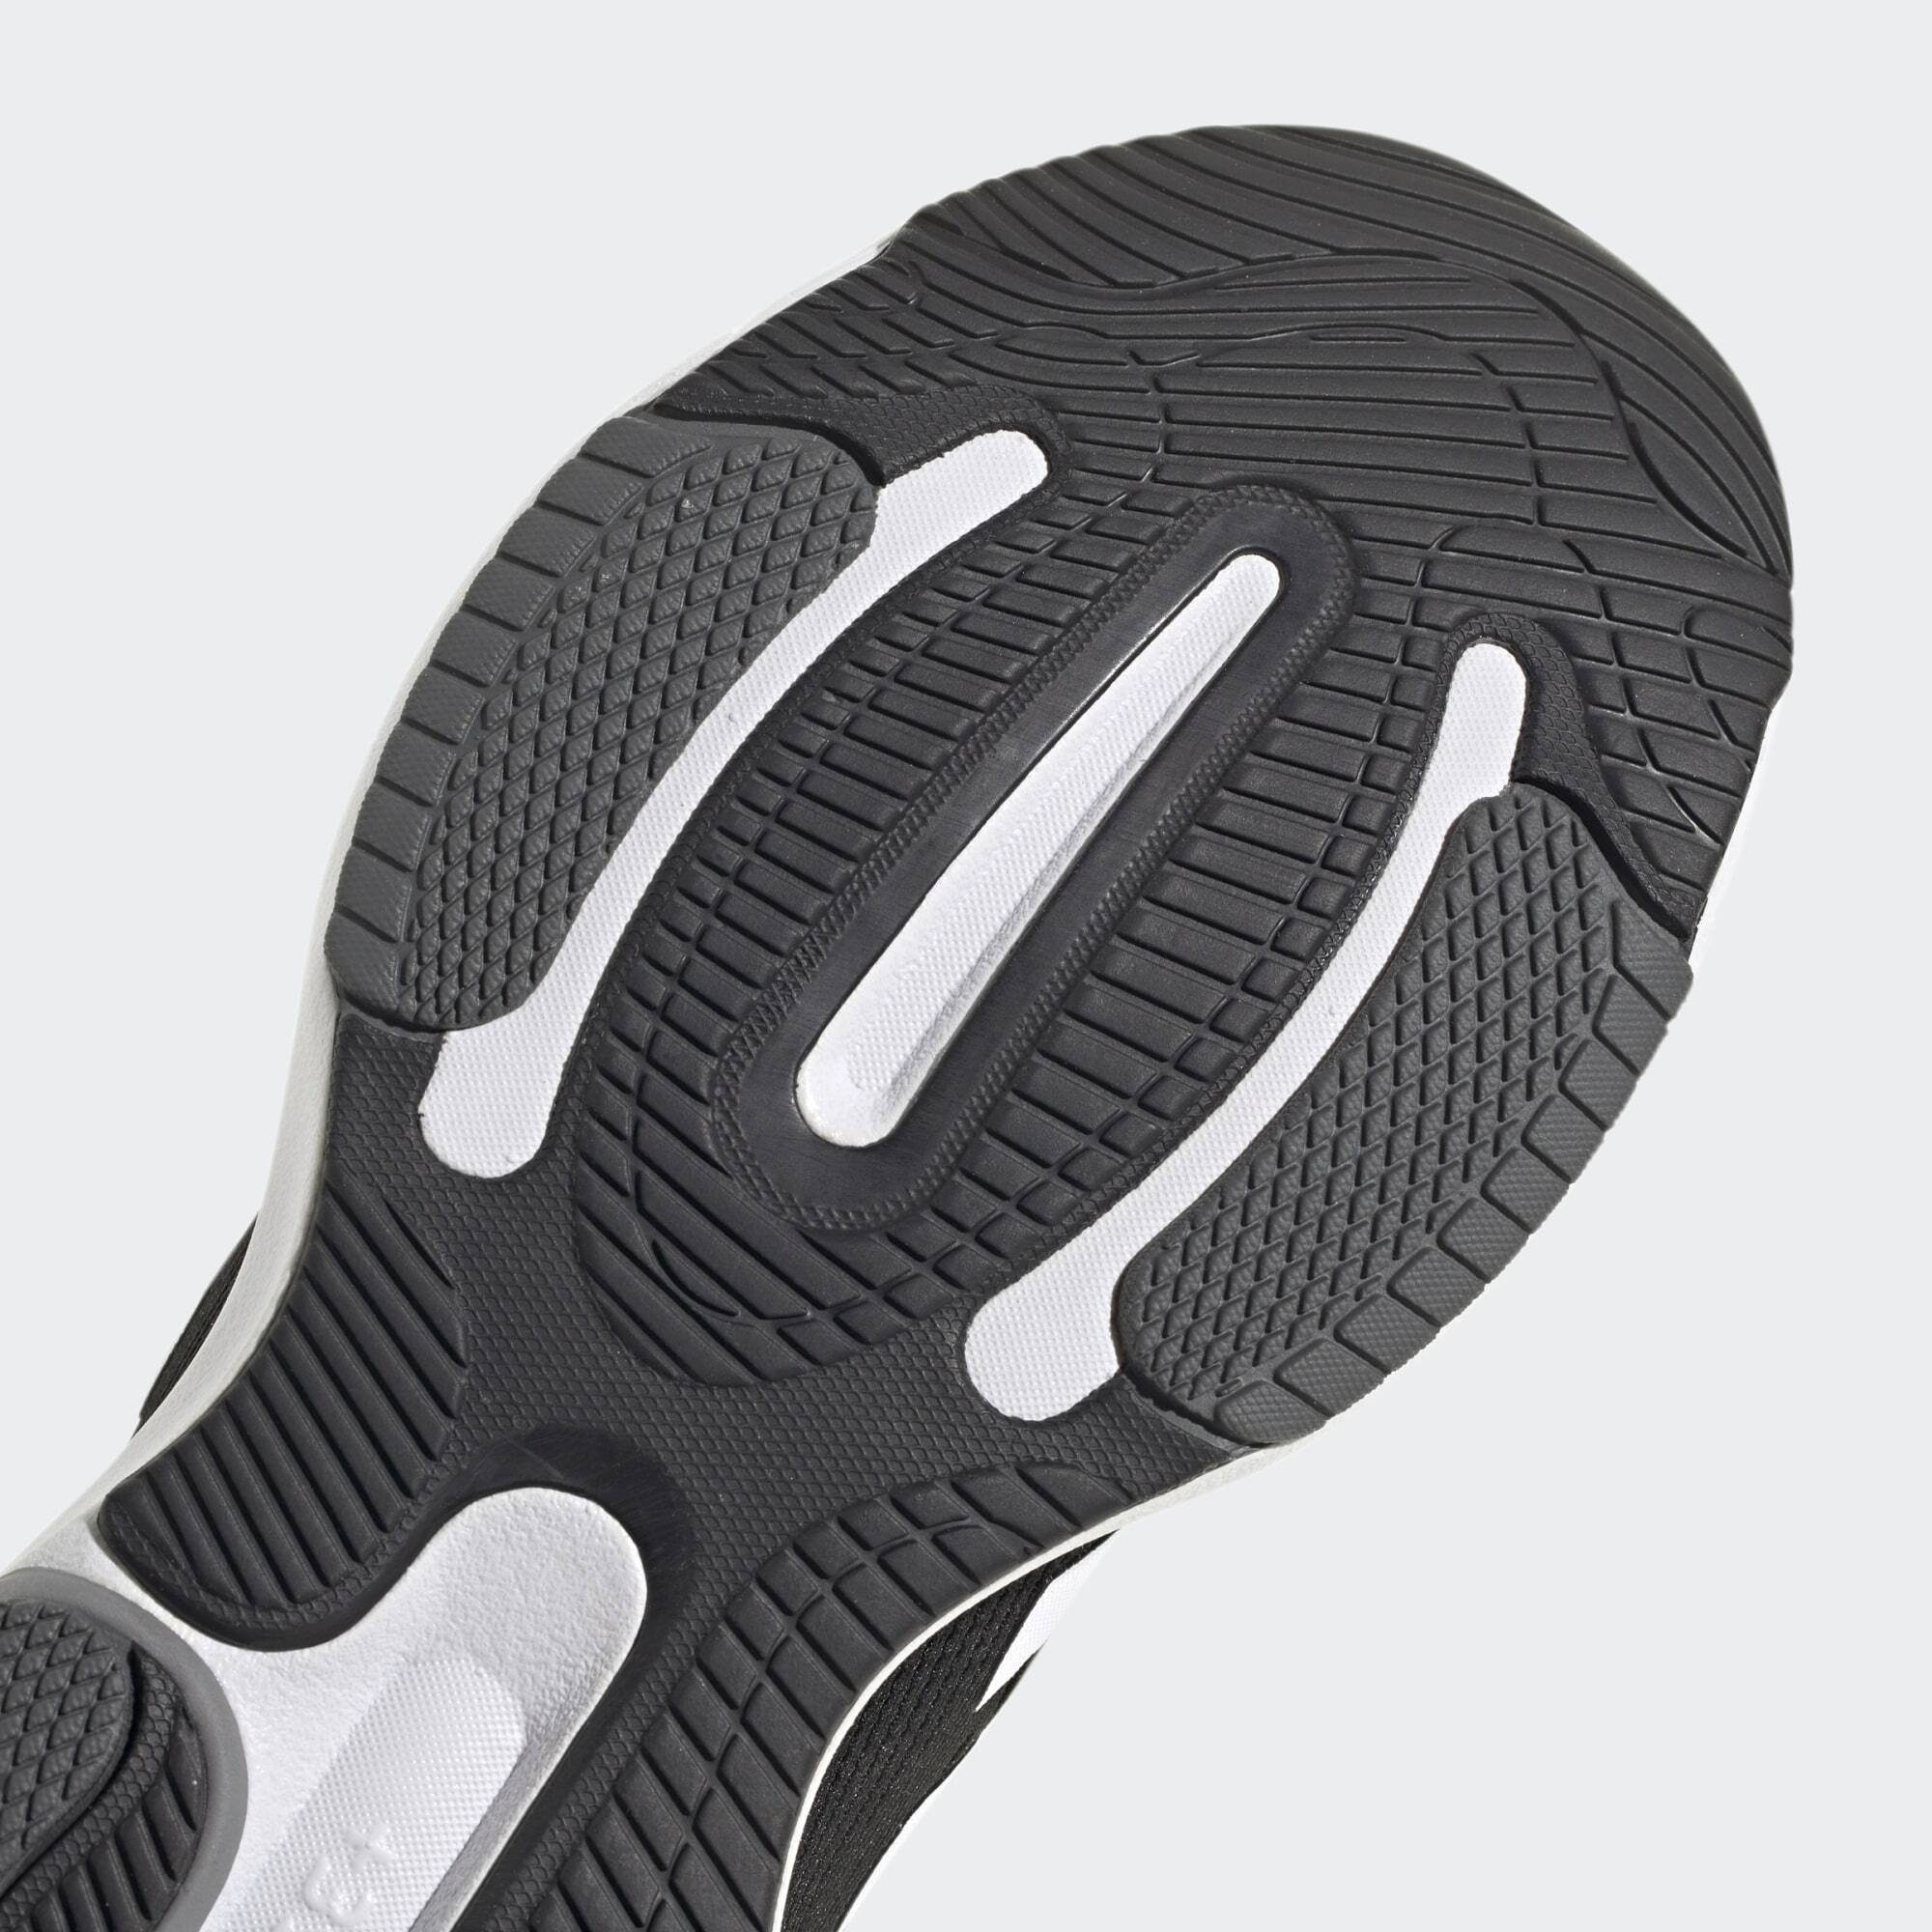 White Black Cloud LAUFSCHUH RESPONSE / 3.0 Core Sneaker Carbon Performance / adidas SUPER